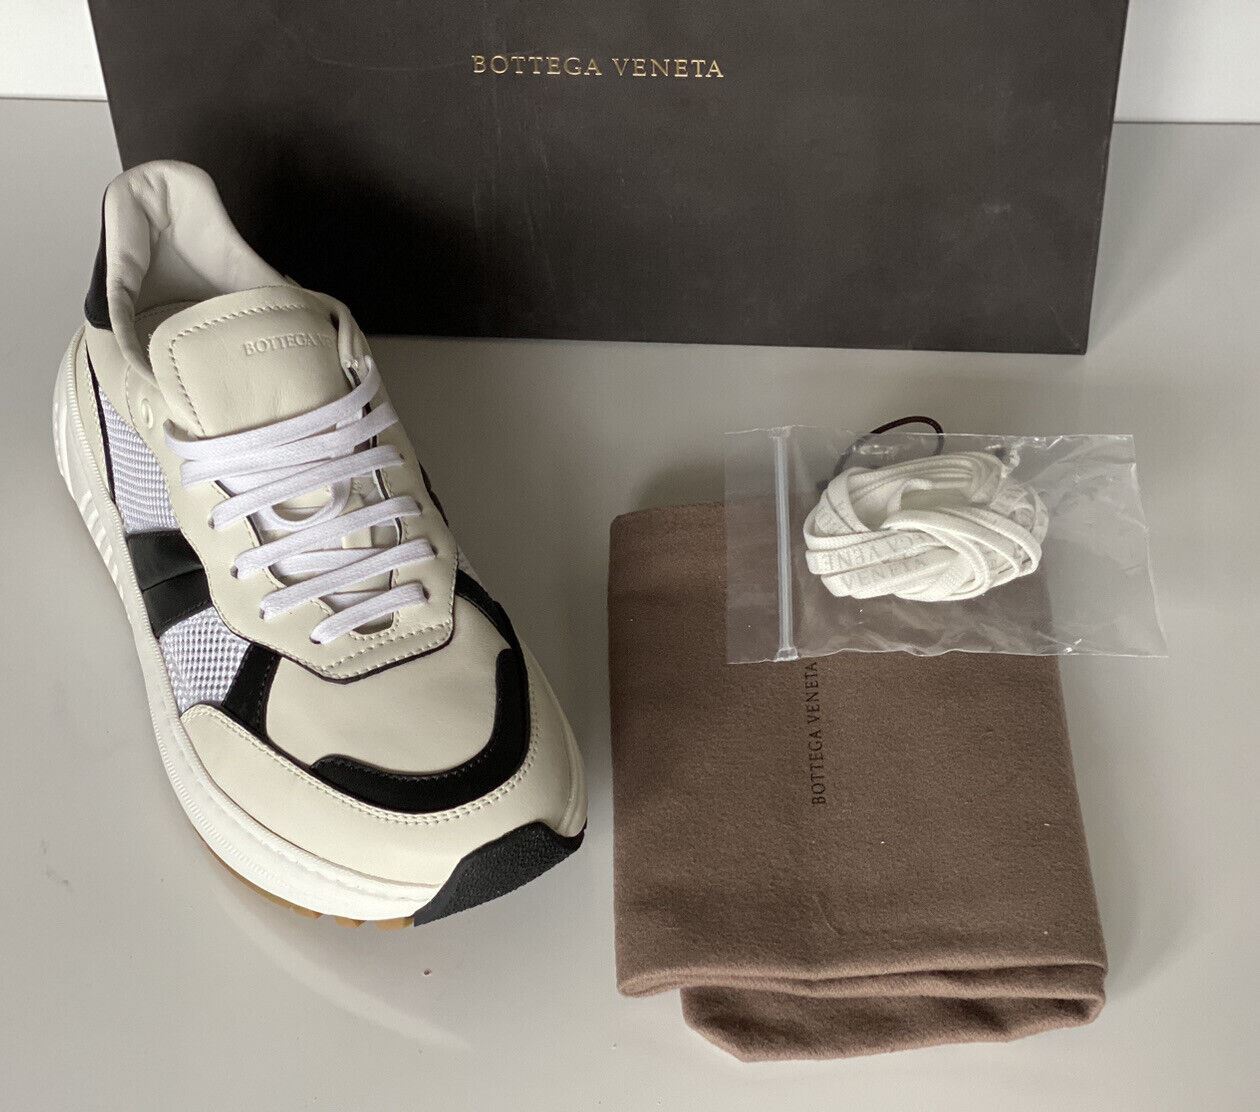 NIB $790 Bottega Veneta Men's Leather & Mesh Sneakers White/Black 11 US 565646